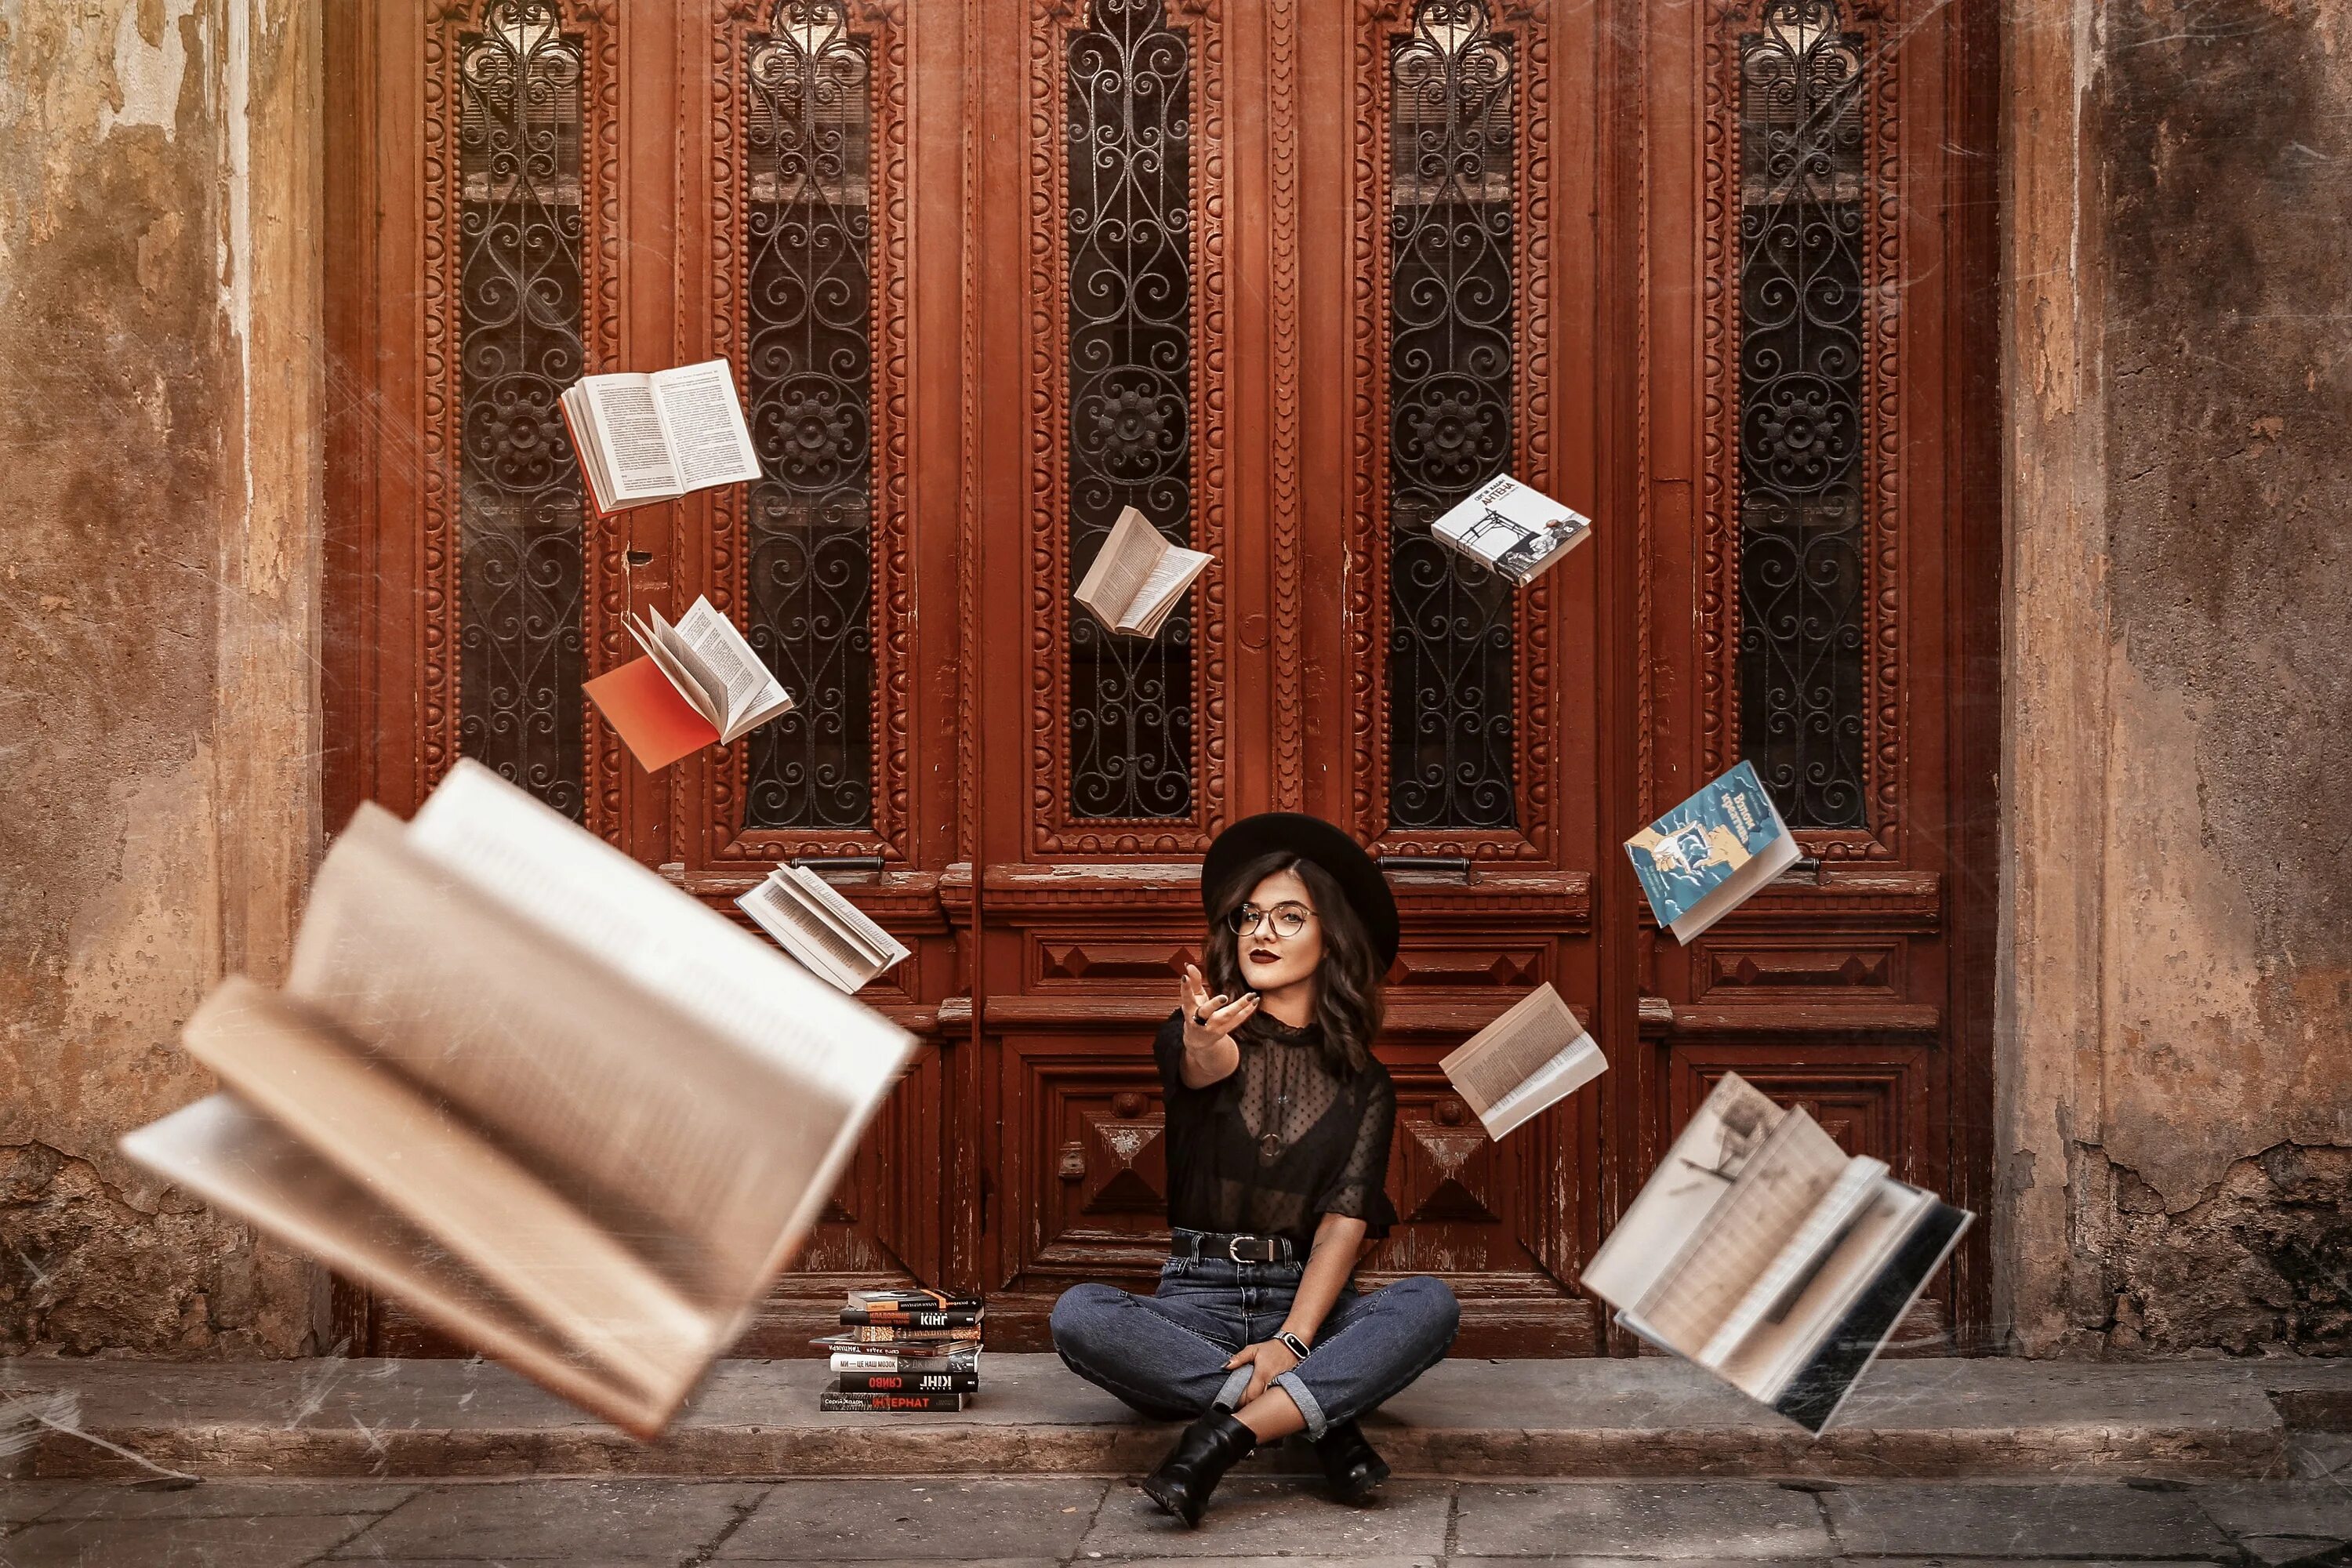 3 д читать книгу. Фотосессия с книгой. Чтение книг. Девушка с книгой. Книга человек.